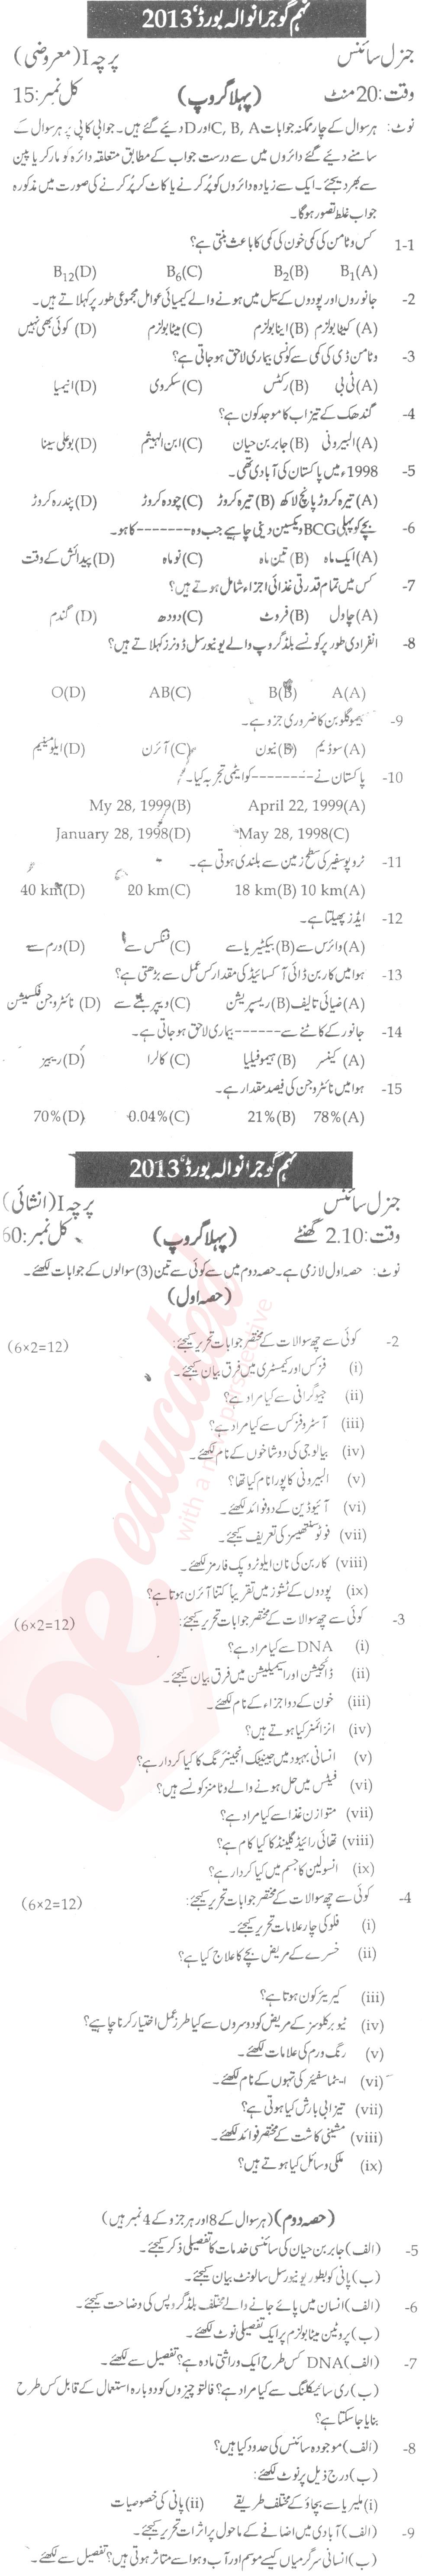 General Science 9th Urdu Medium Past Paper Group 1 BISE Gujranwala 2013